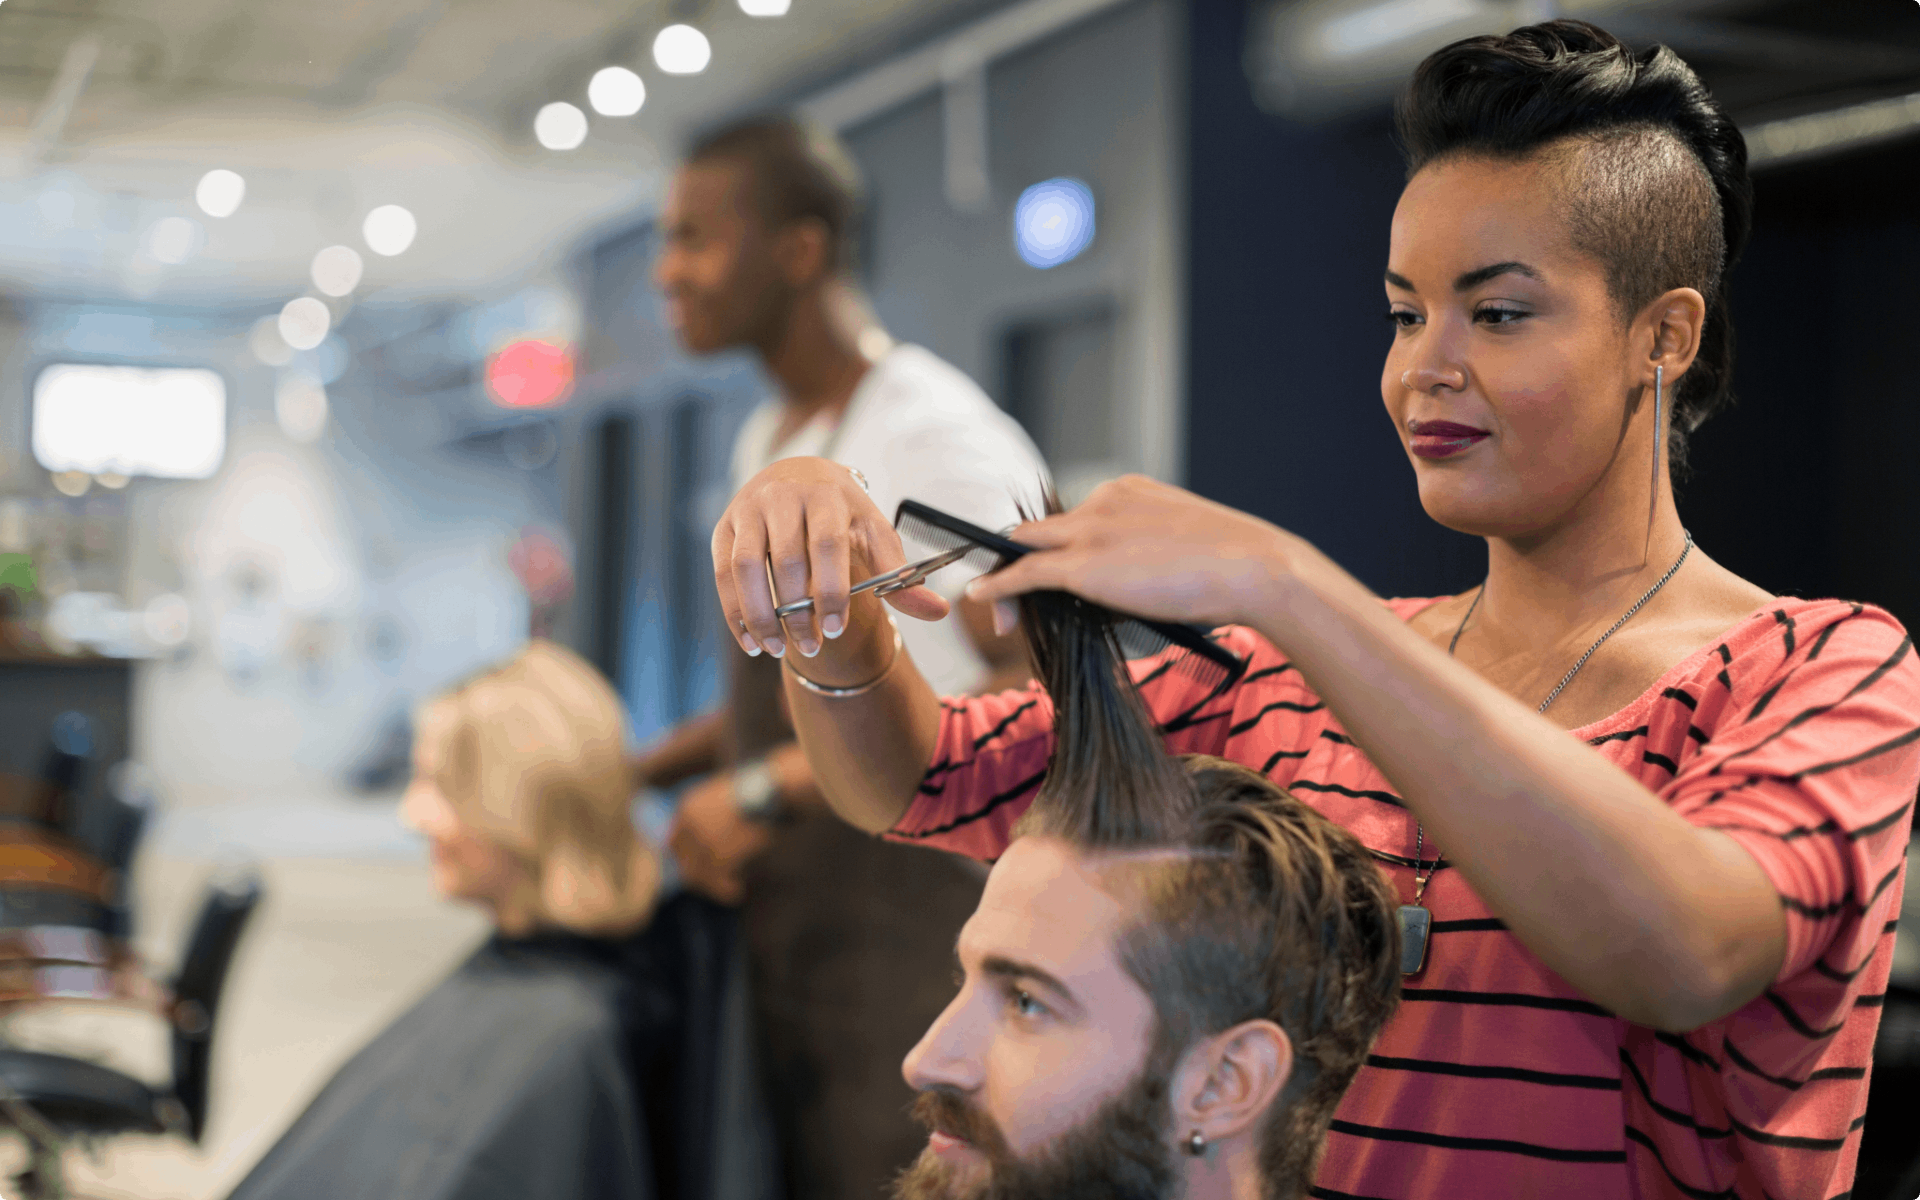 A stylist cutting a client's hair.